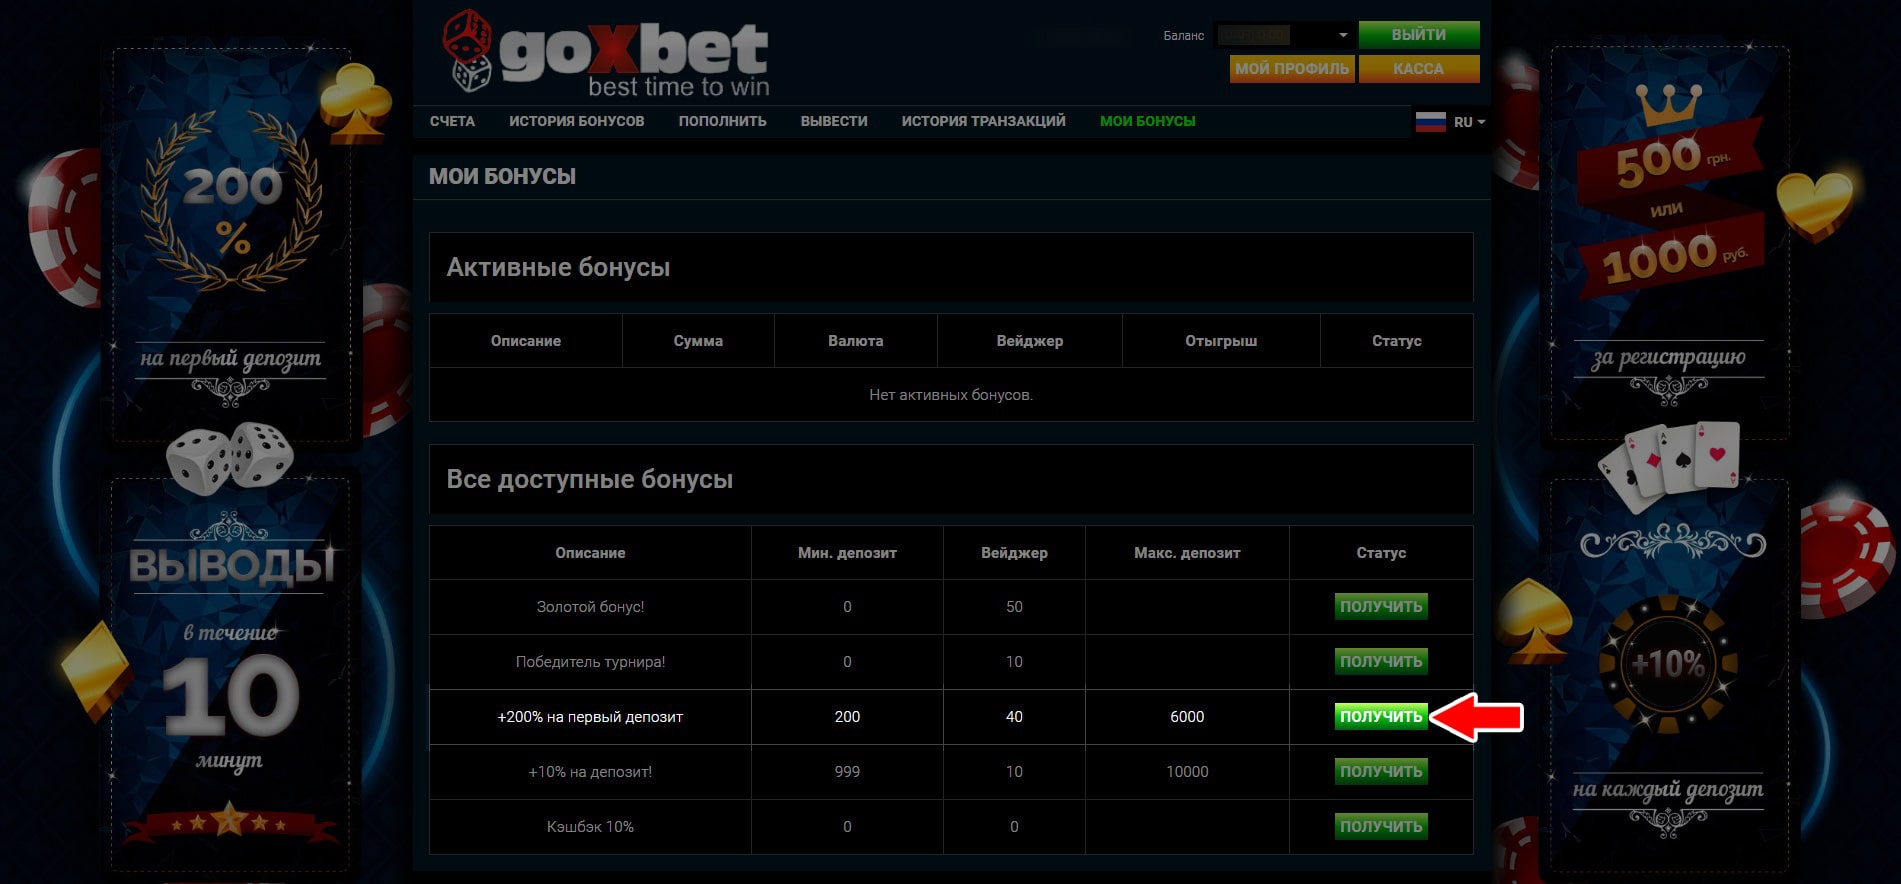 Шаг 3 - получение бонуса на первый депозит в онлайн казино Goxbet